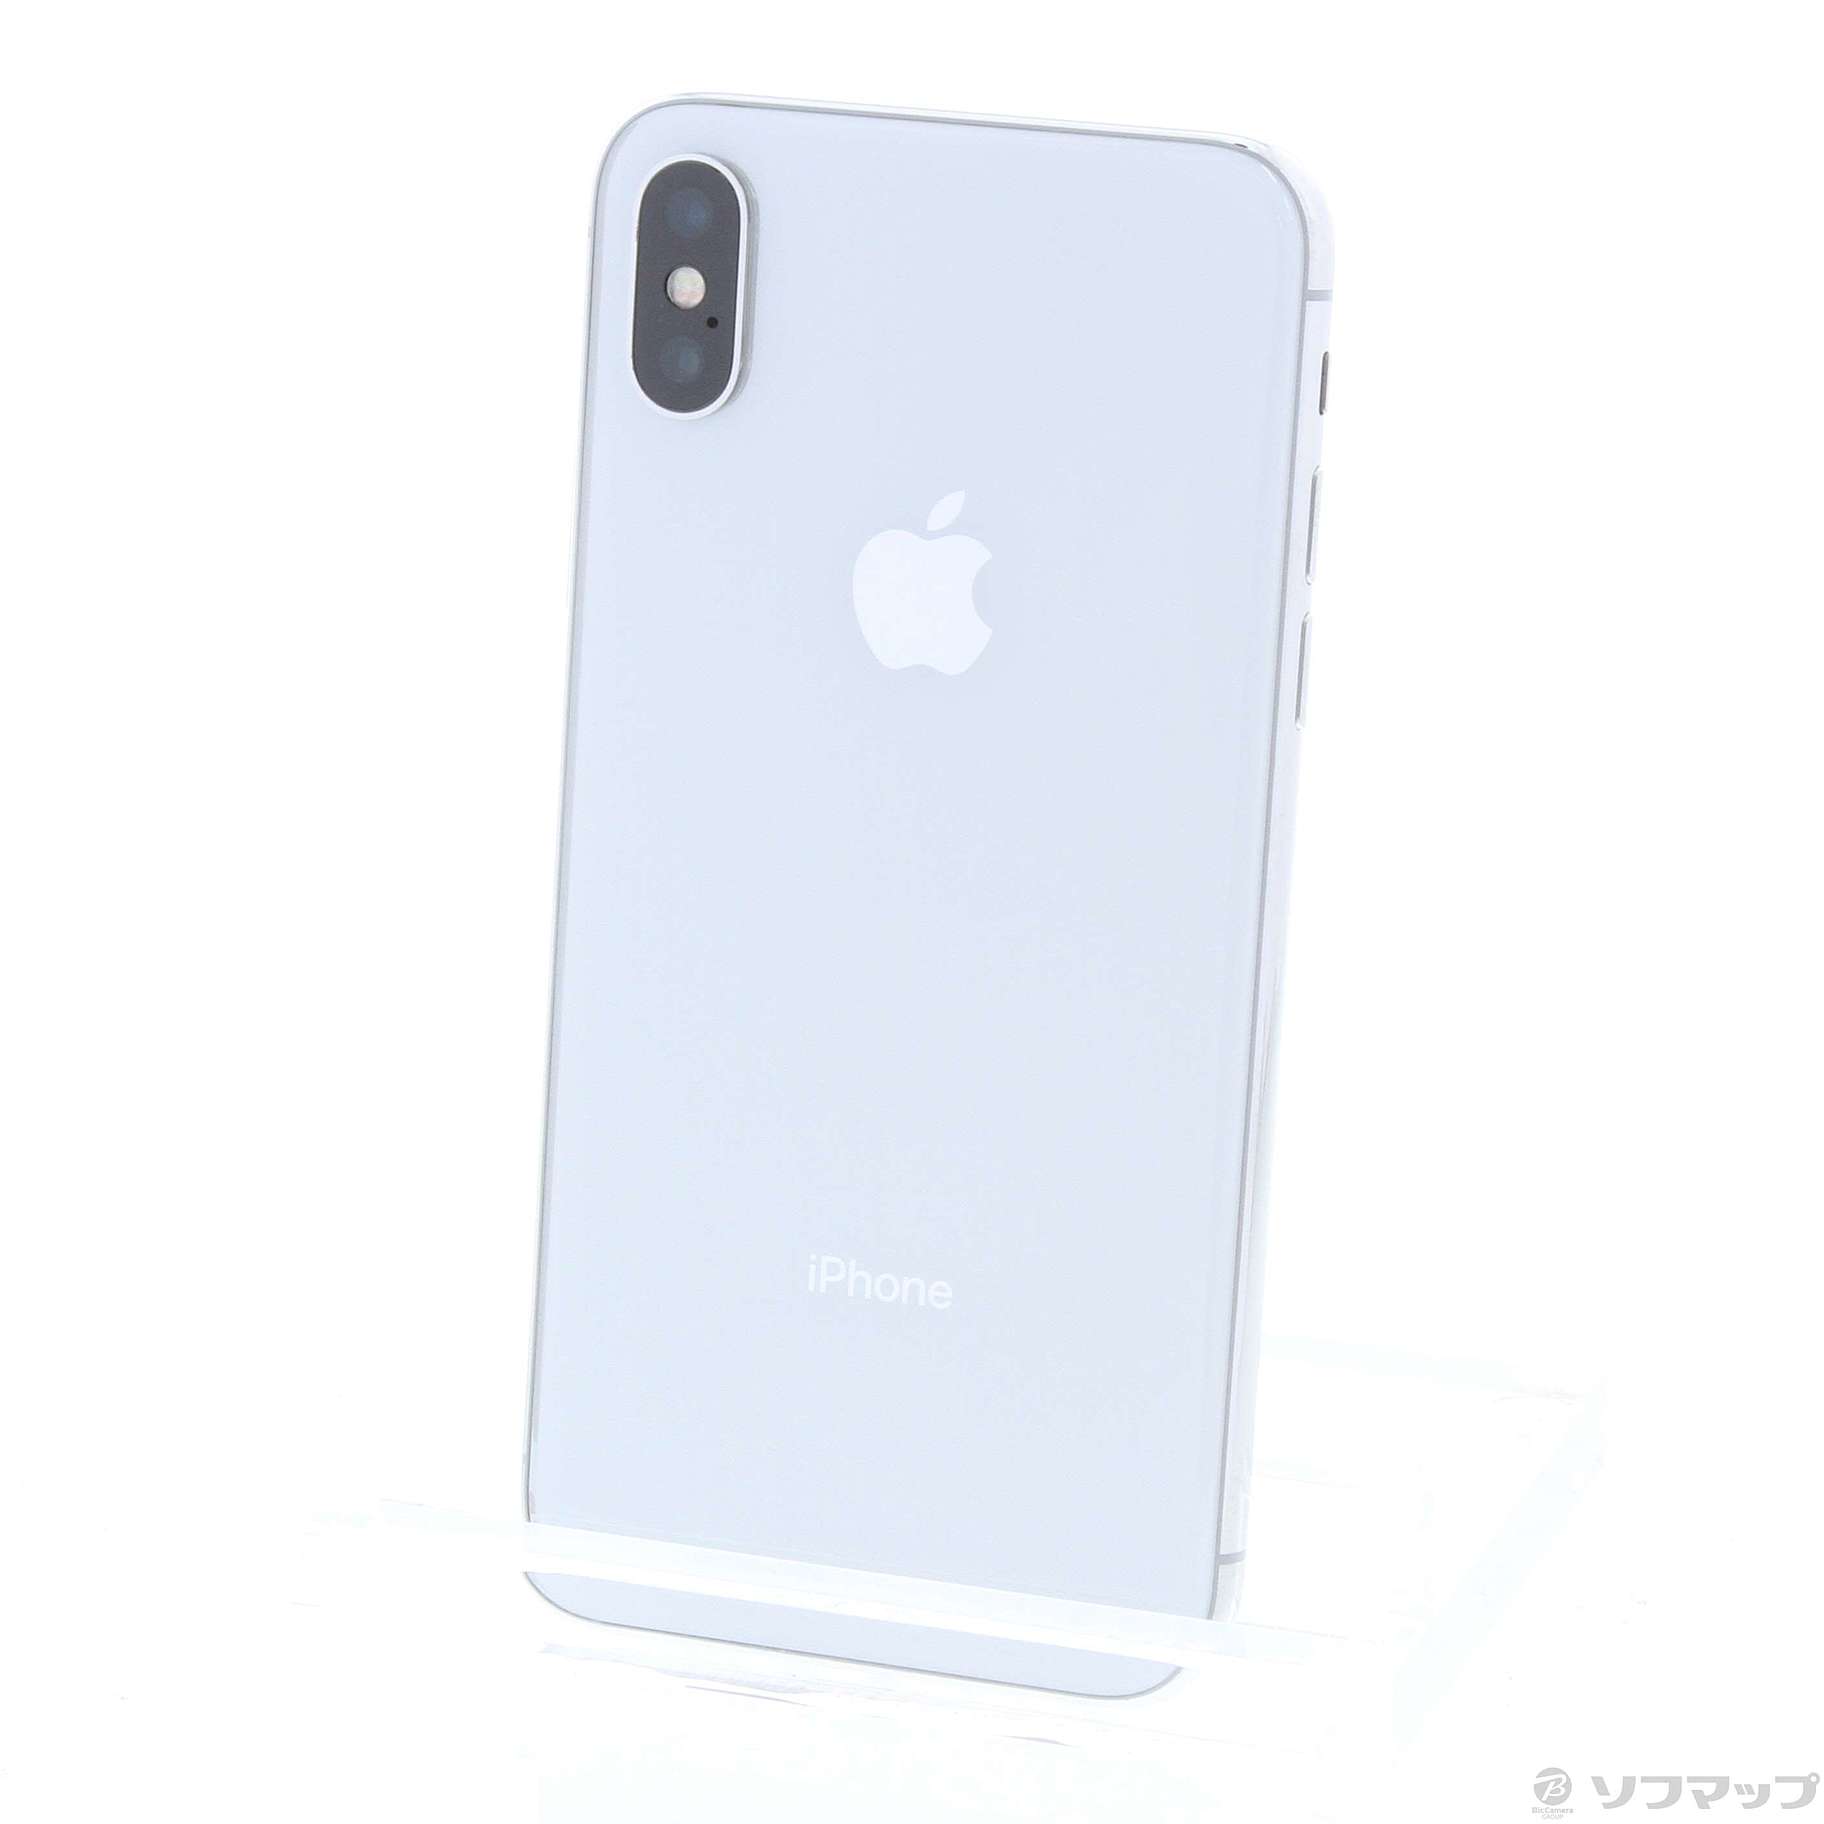 18224円 65%OFF【送料無料】 iPhone X 64GB